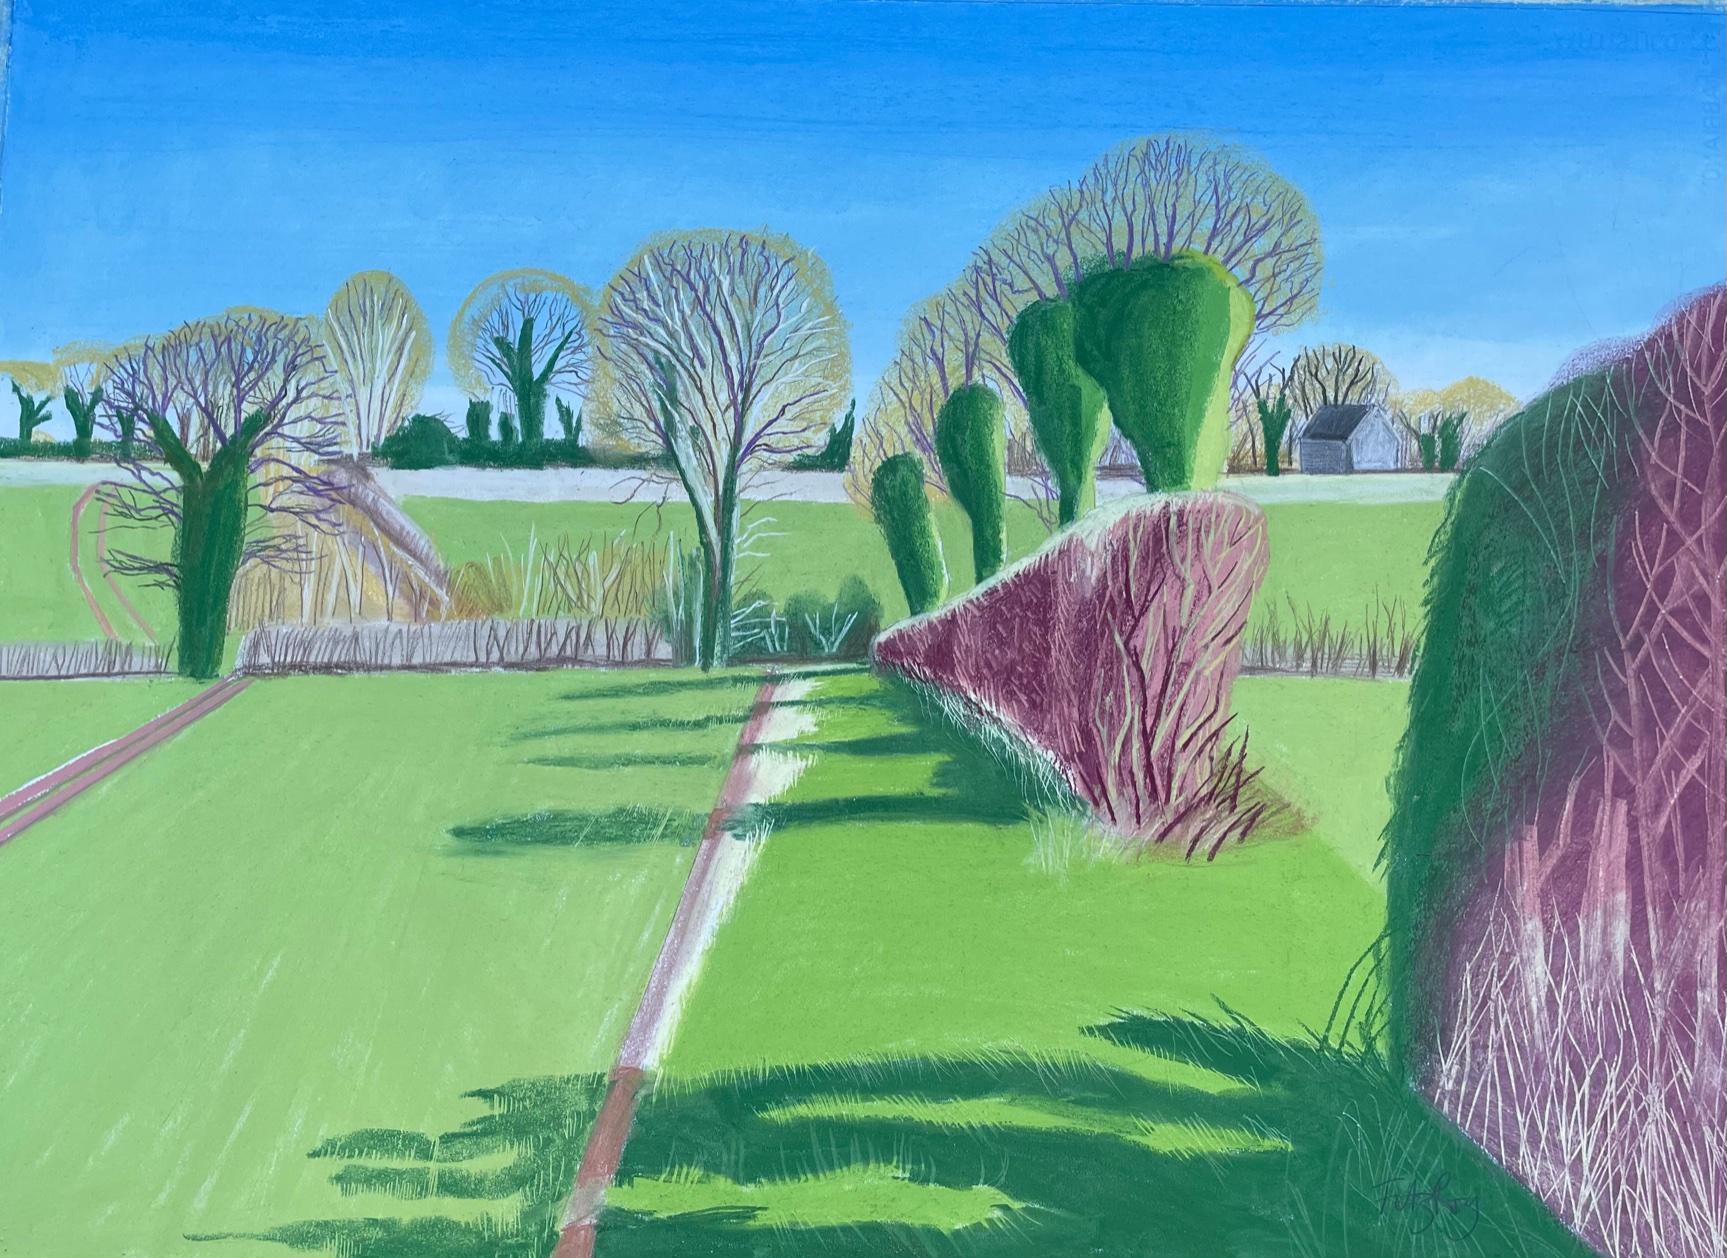 Cornelia Fitzroy  Landscape Art – Deddington Hedges von Cornelia Fitzroy, pastellfarbene Zeichnung, Landschaft, Natur